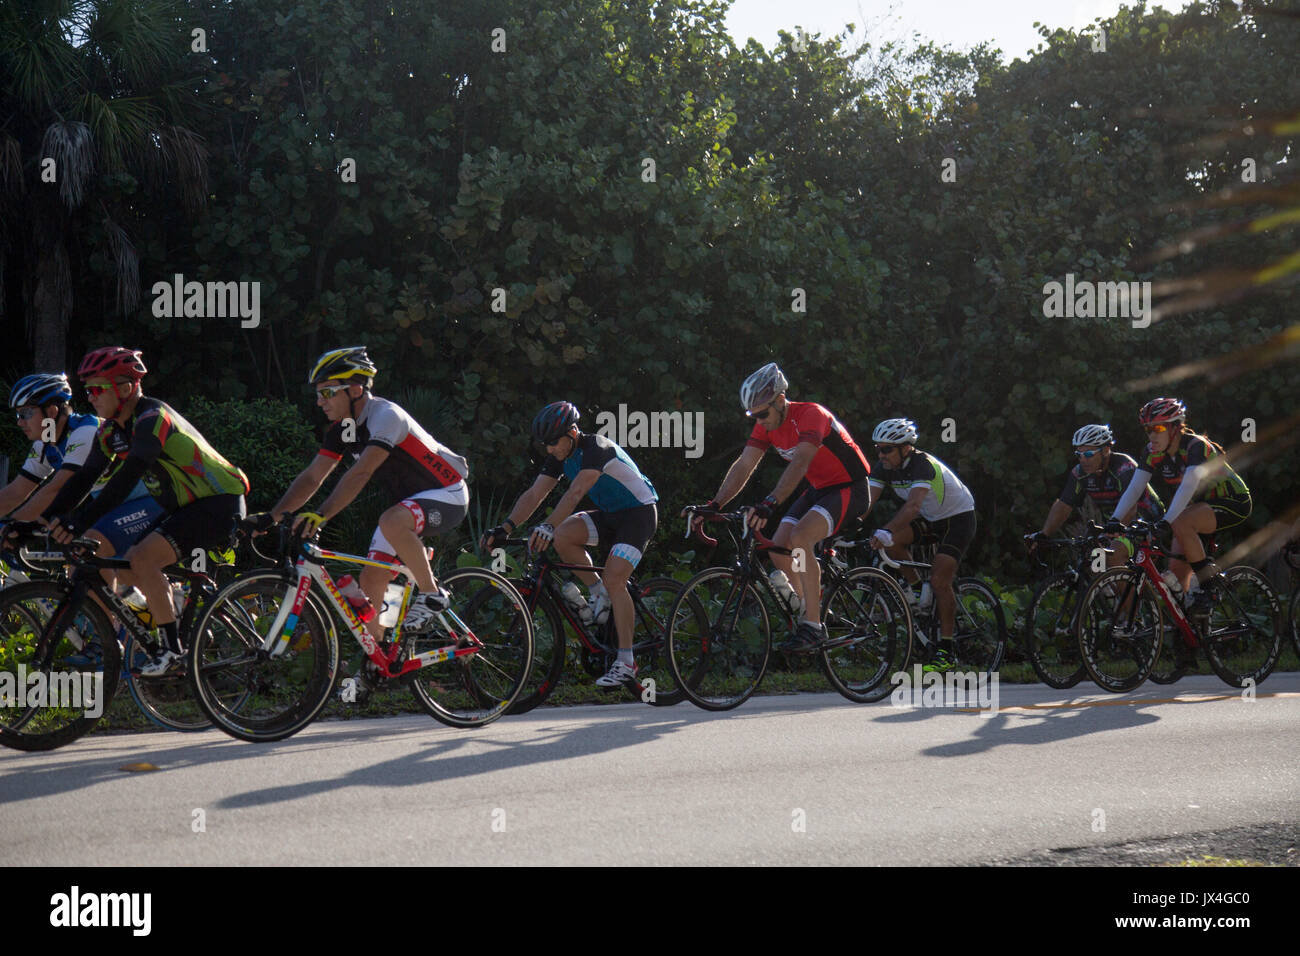 Les cyclistes équitation dans un groupe. Banque D'Images